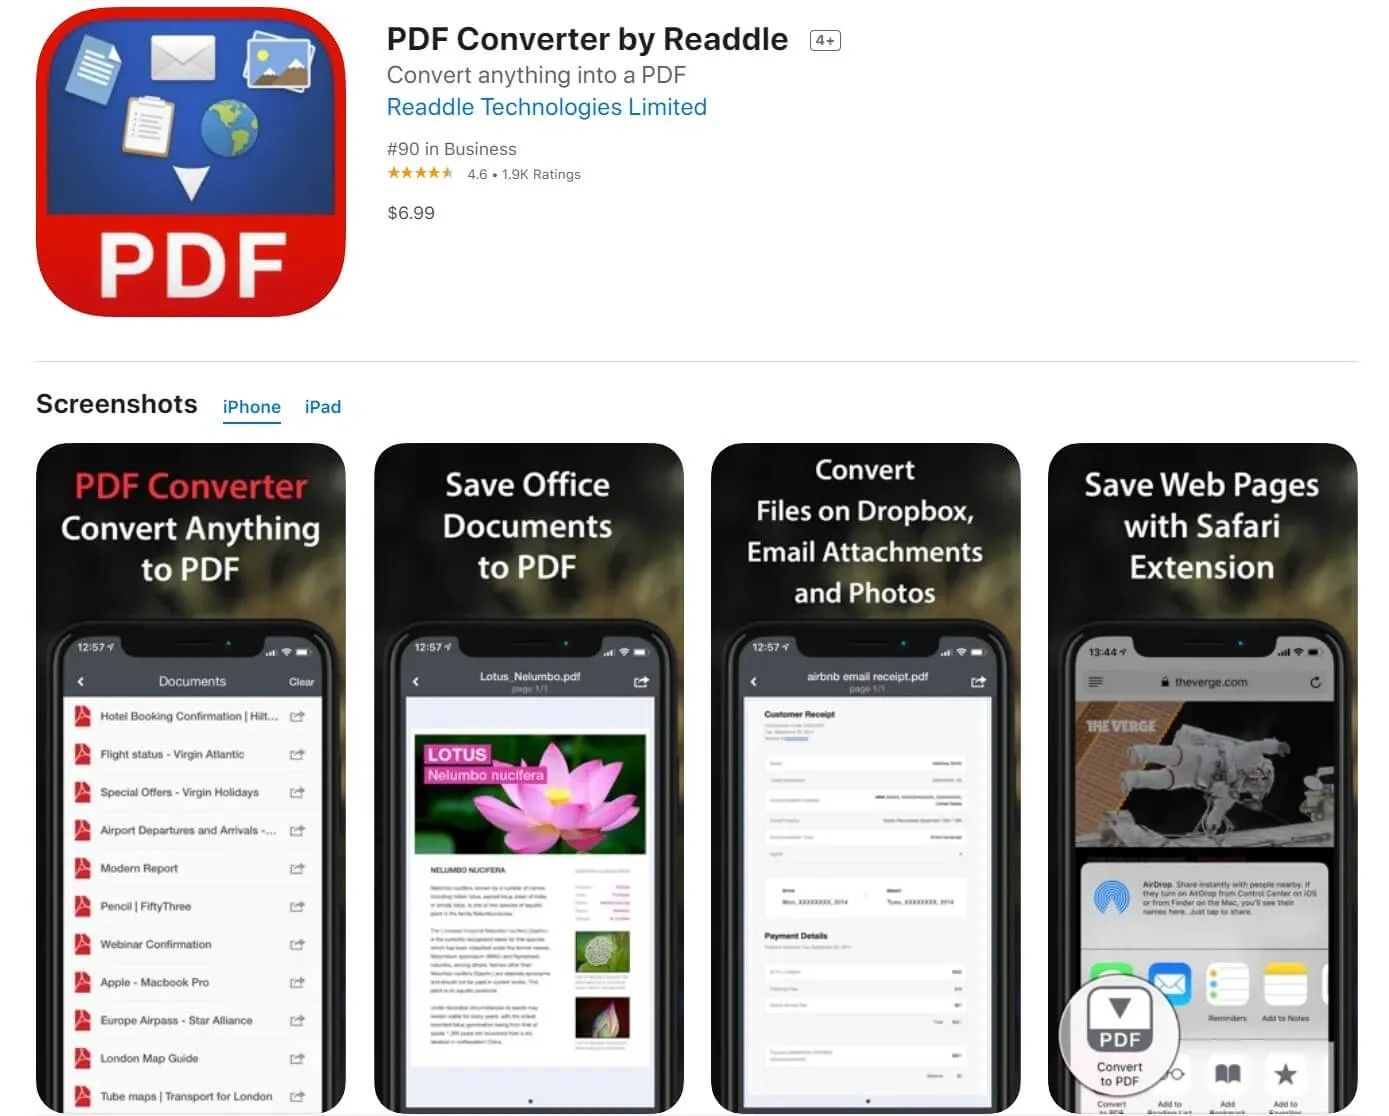 jpd in pdf app PDF Converter von Readdle